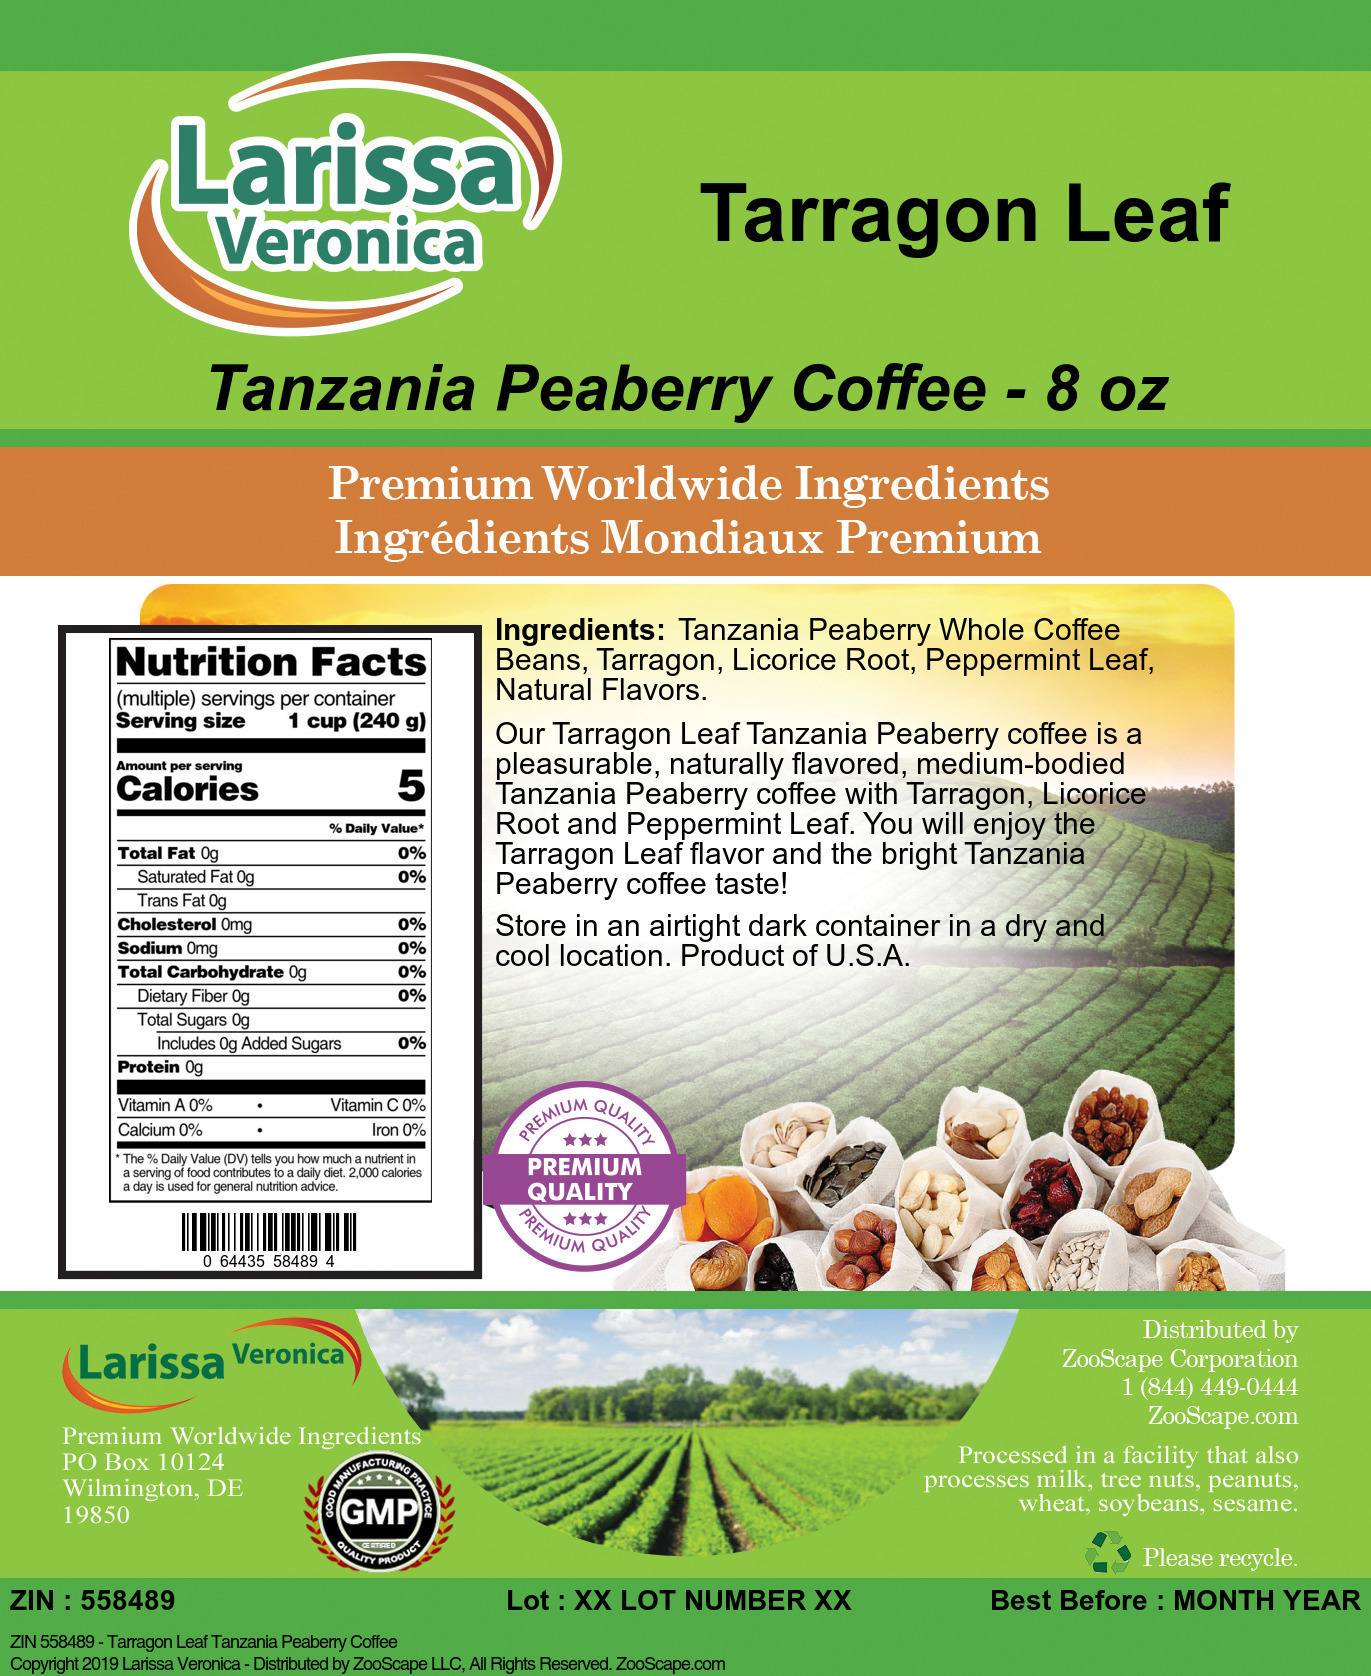 Tarragon Leaf Tanzania Peaberry Coffee - Label